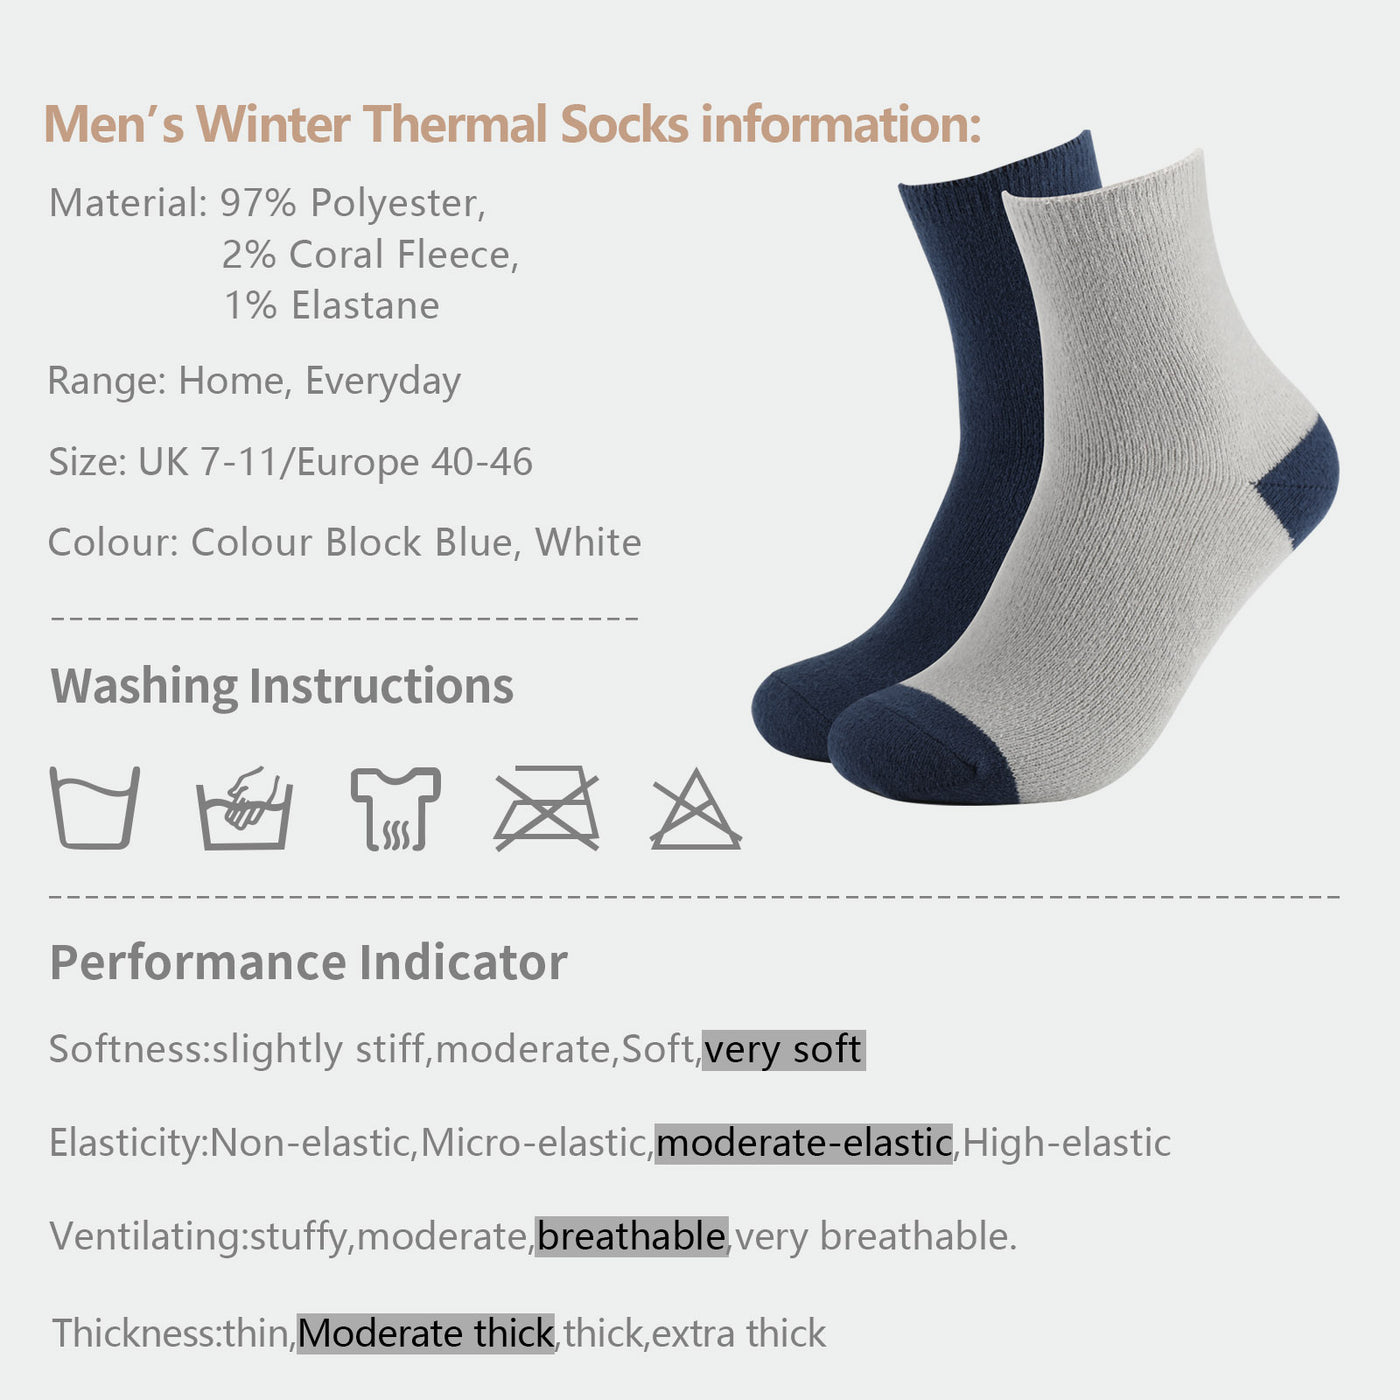 Laulax Chaussettes moelleuses d'hiver pour hommes, coffret cadeau 4 paires, taille UK 7-11/Europe 40-46